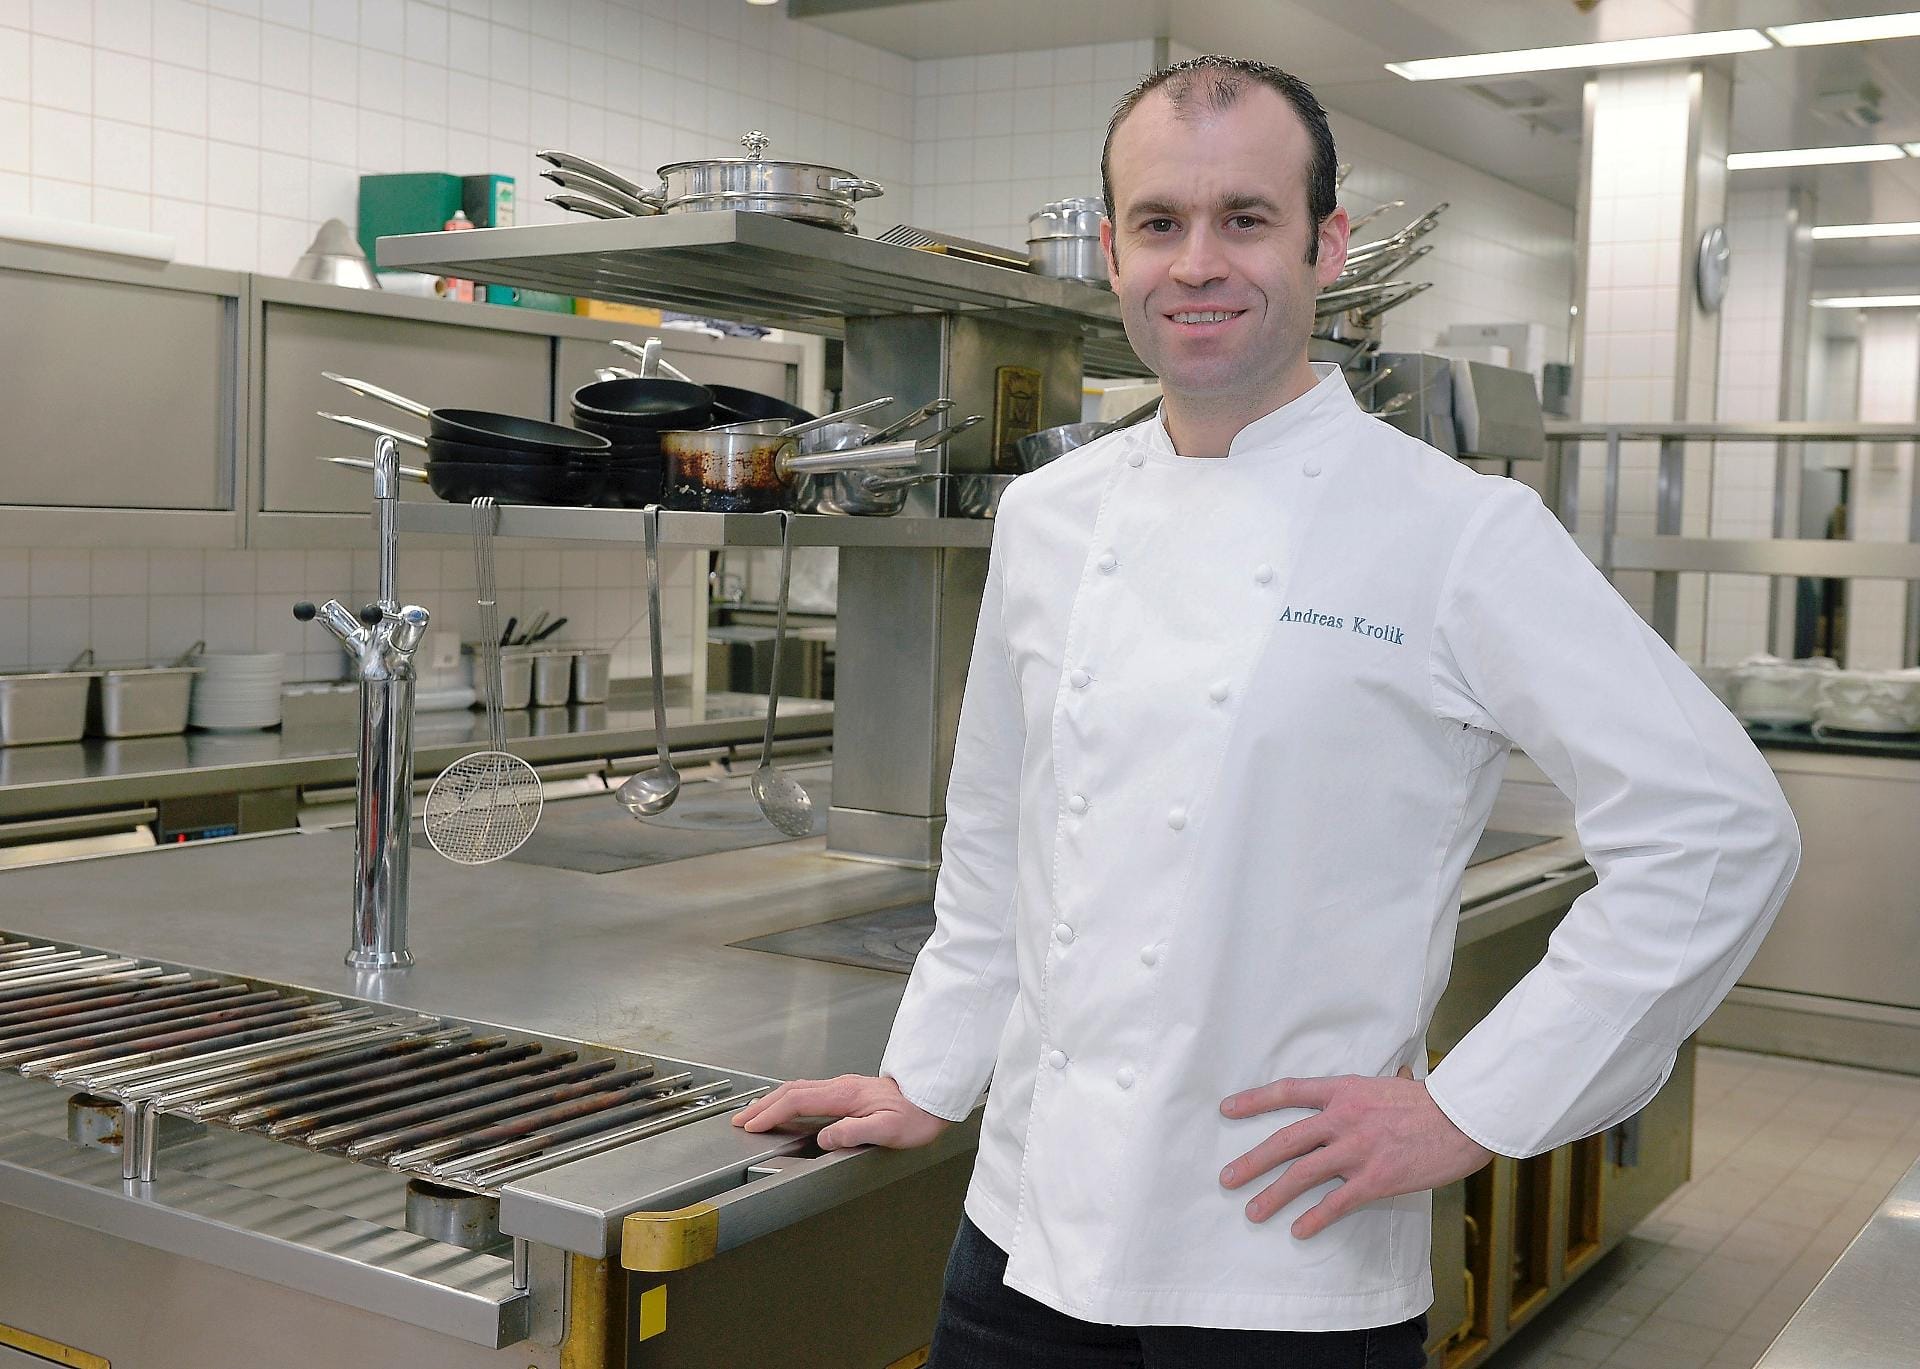 HANDOUT - Andreas Krolik, Küchenchef des Restaurants "Lafleur" in Frankfurt am Main. Der "Guide Michelin" hat das Restaurant mit einem zweiten Stern geadelt.